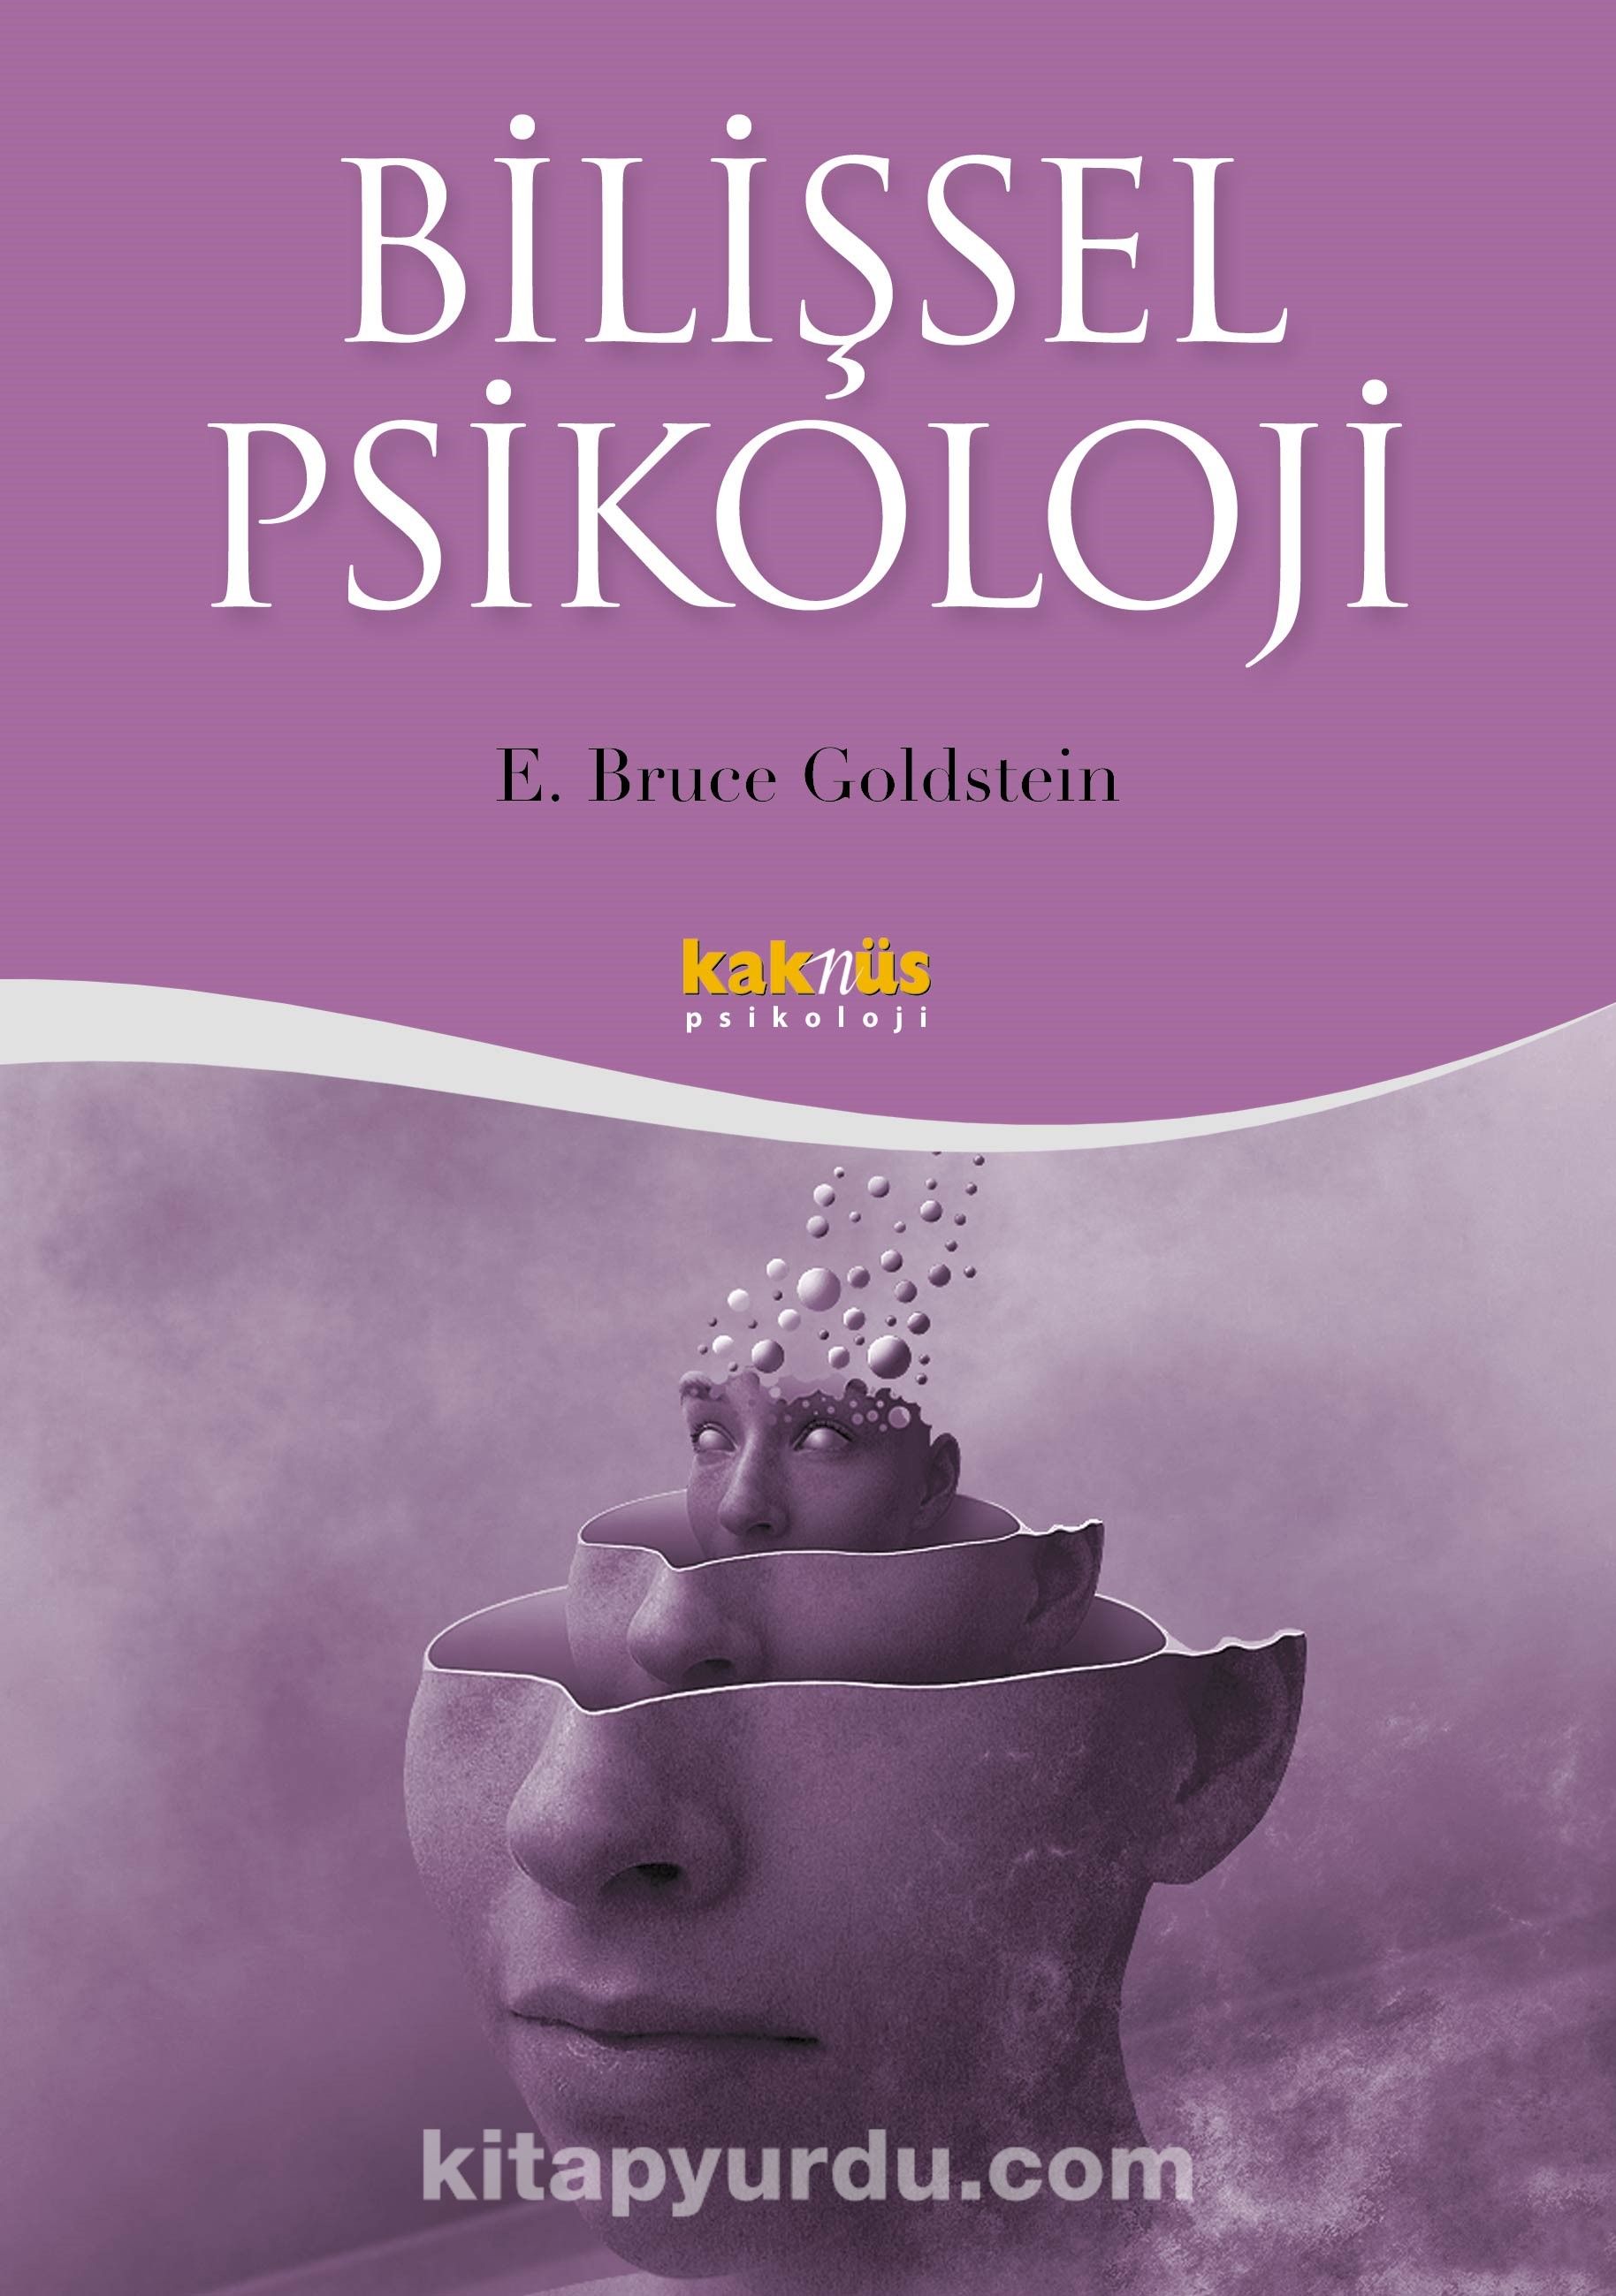 Bilişsel Psikoloji - ... - KAKNÜS YAYINLARI- DERS KİTAPLARI - E. Bruce Goldstein - Klasik  bilişsel-davranışçı yaklaşımla günümüzün fizyoloji odakl